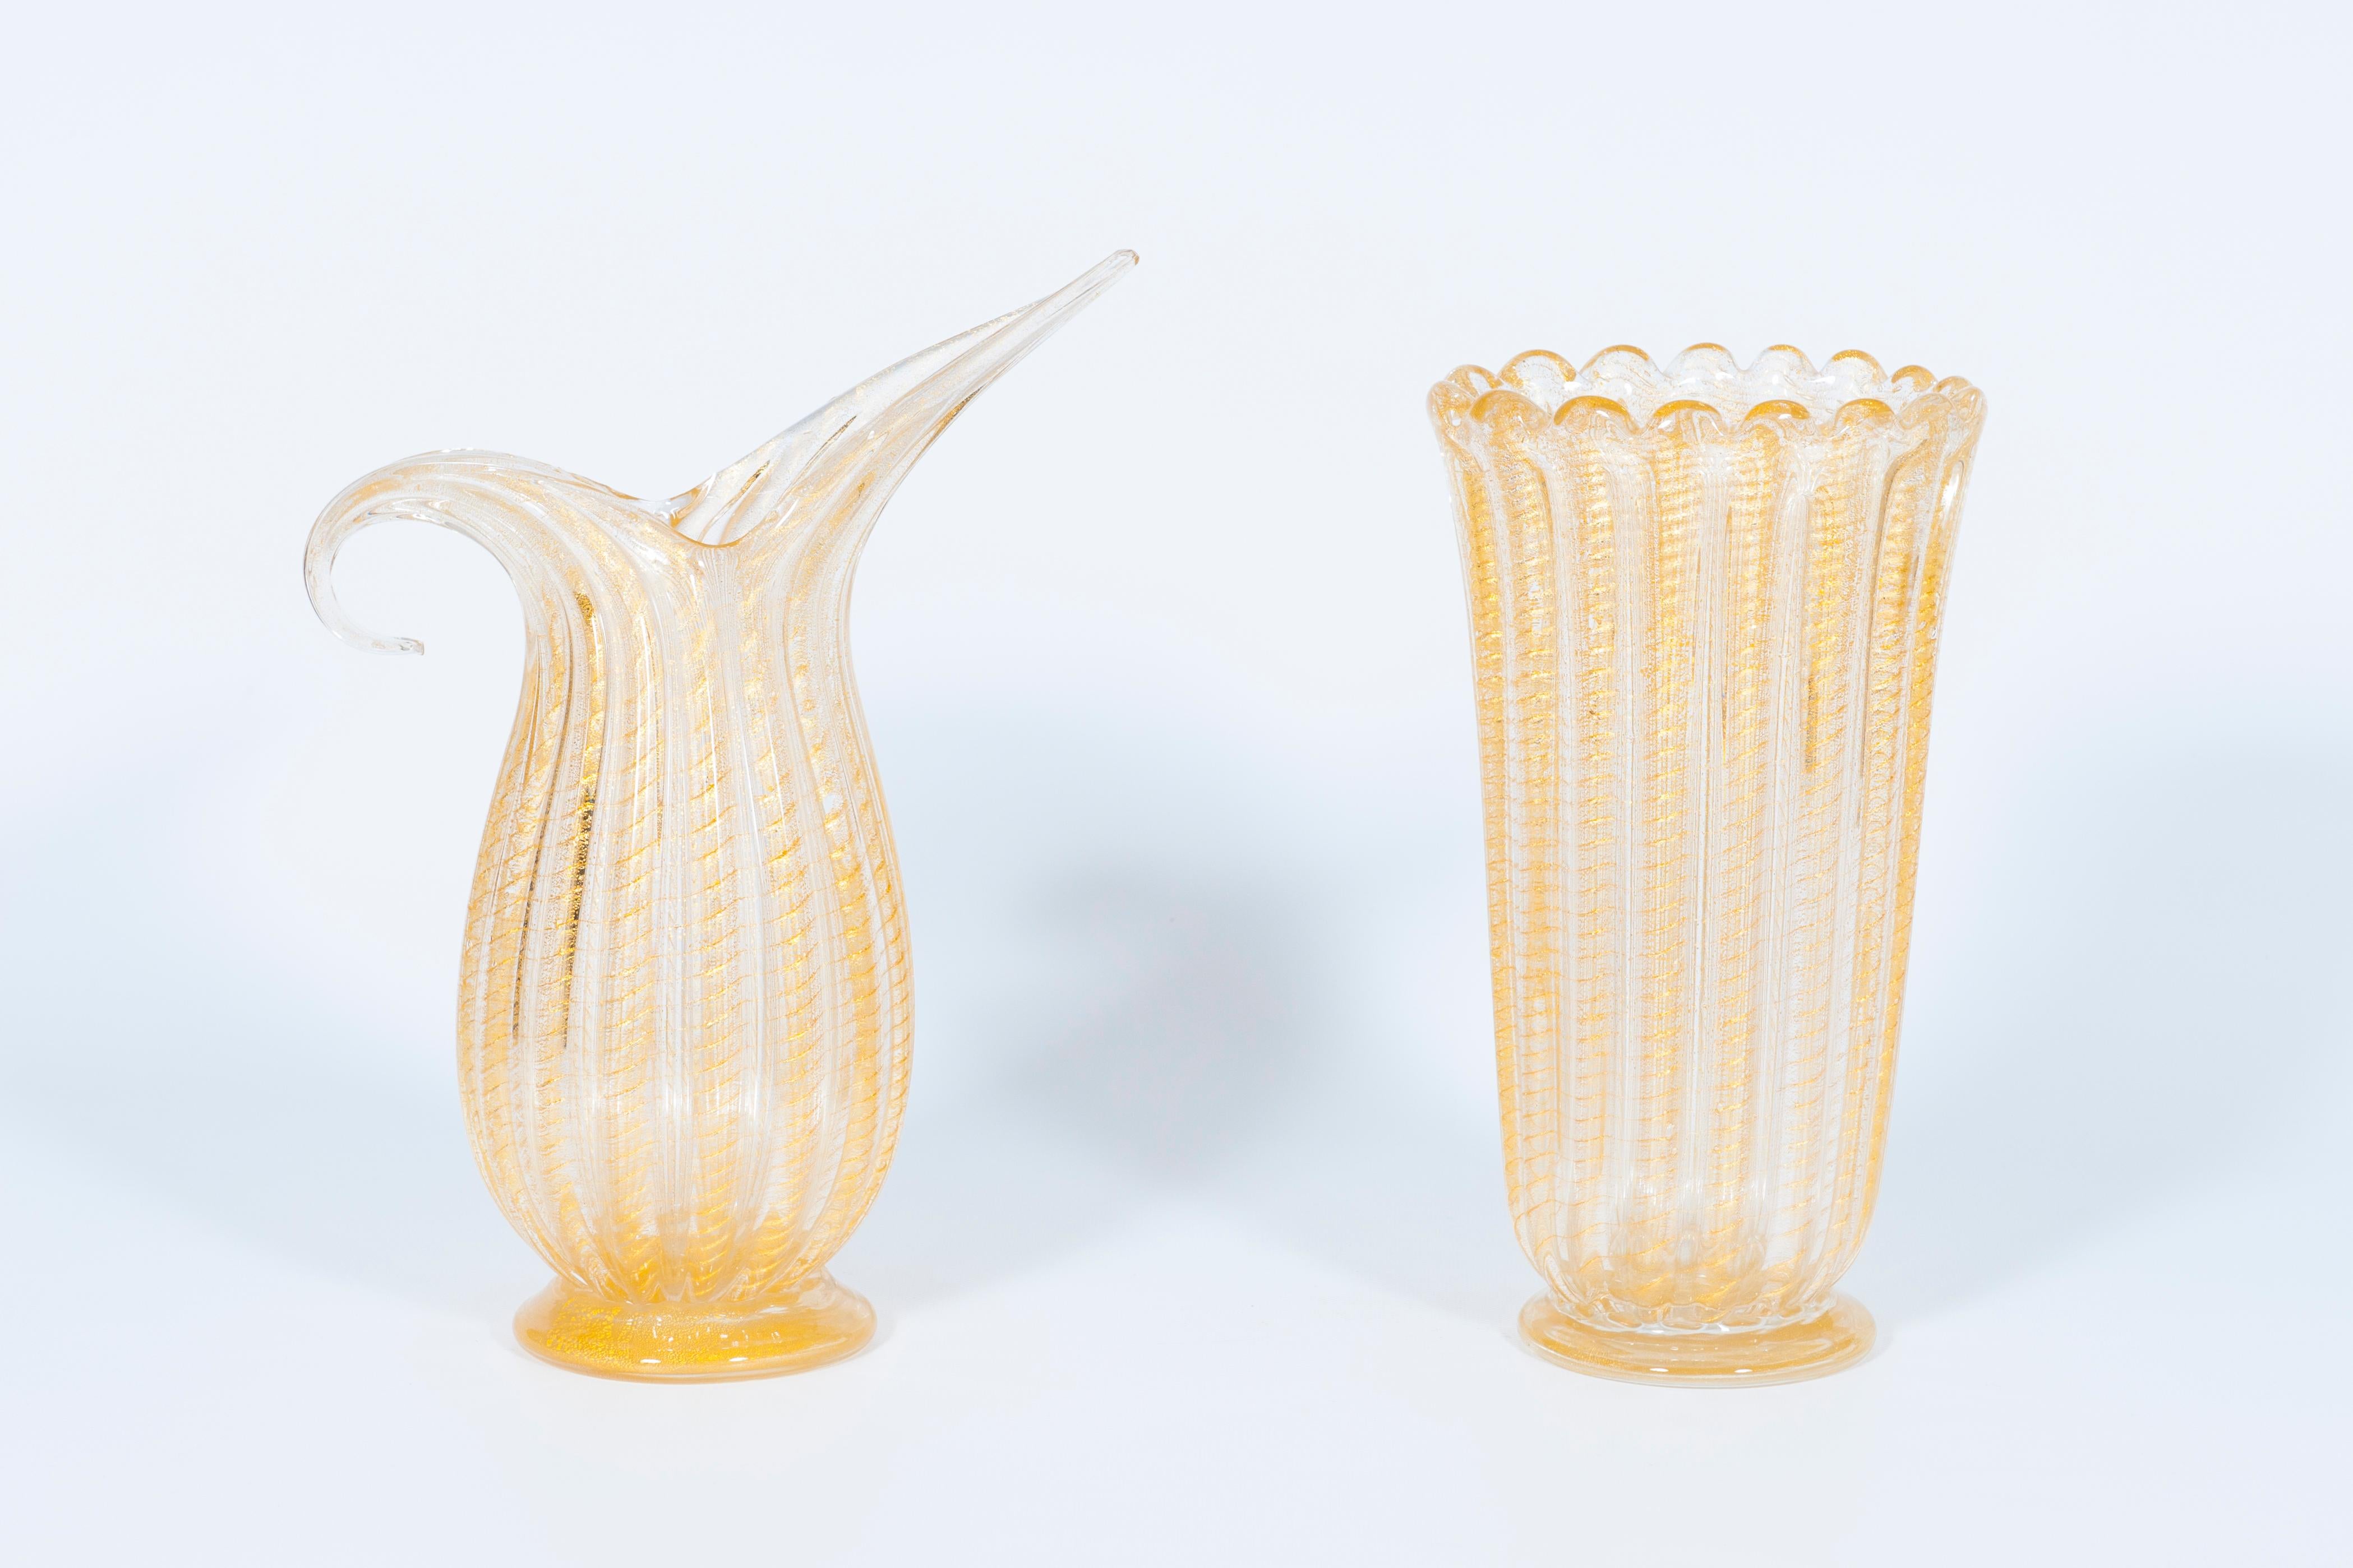 Set aus gerippter Vase und Krug aus Murano-Glas mit 24-karätigem Gold, im Stil von Barovier, Italien, 1980er Jahre.
Die Meisterwerke haben unterschiedliche Formen: eine hat einen ovalen Boden und einen gewellten Rand auf der Oberseite, die andere